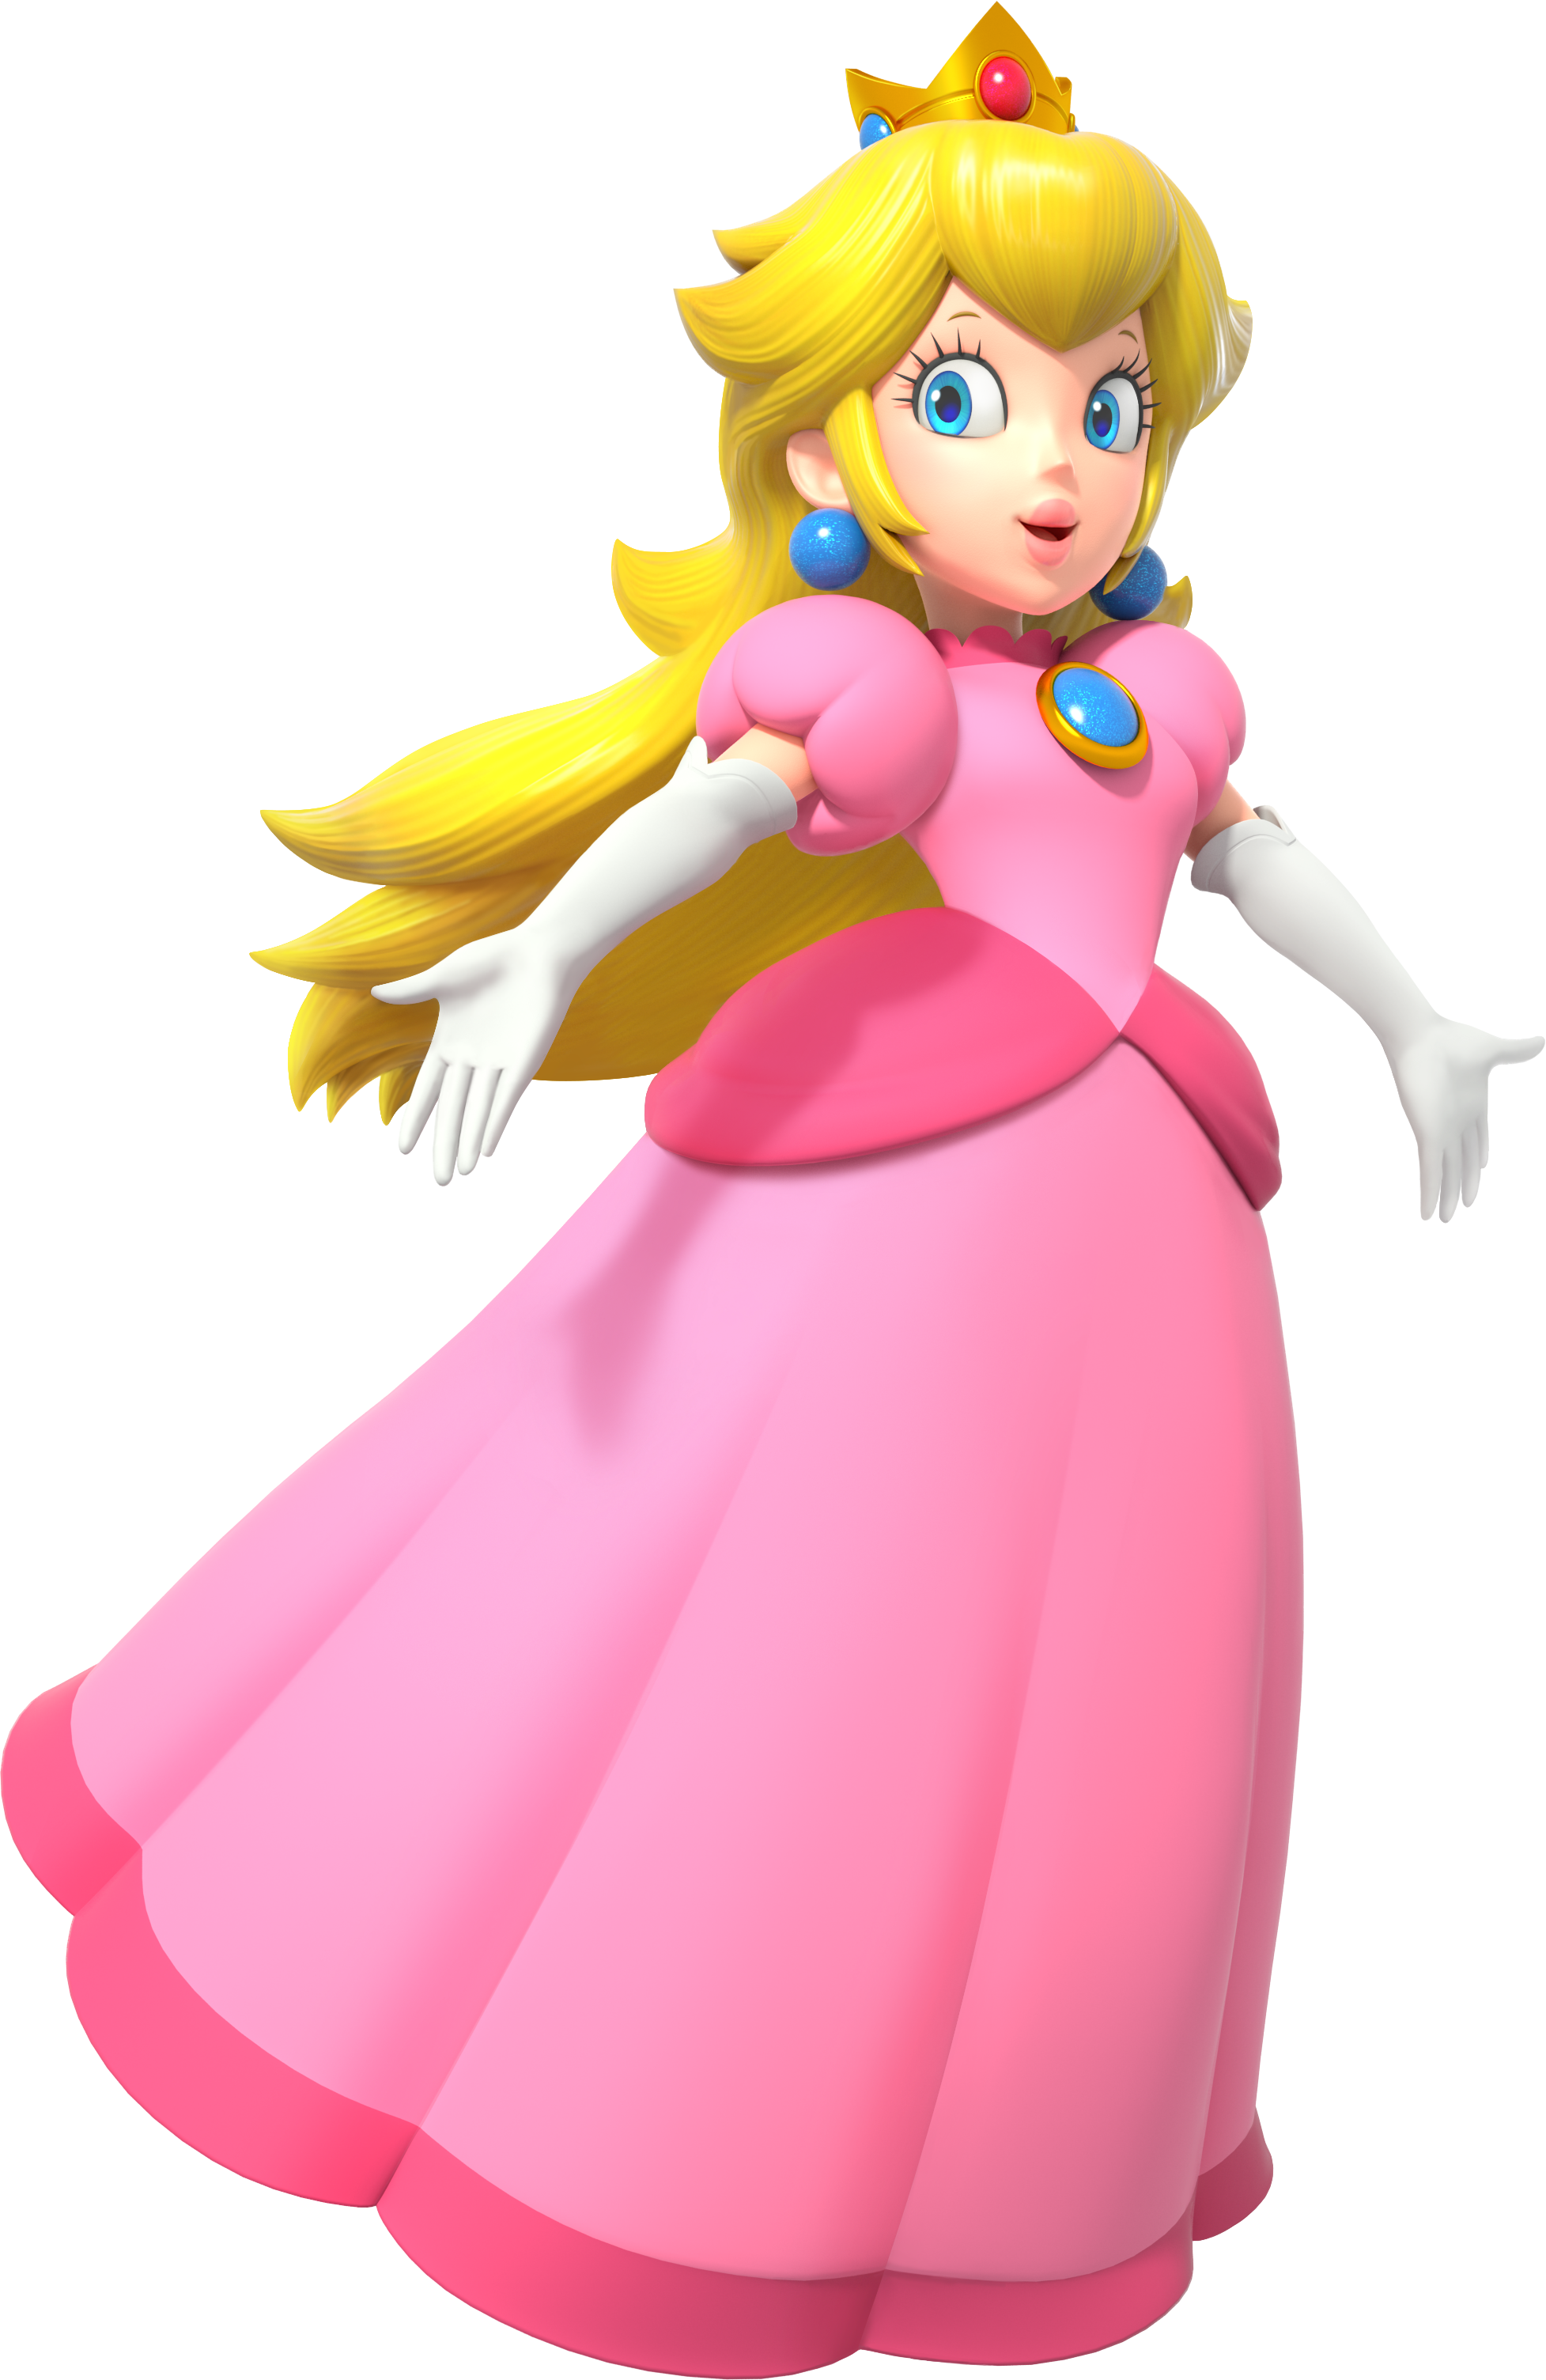 Super Princess Peach - Super Mario Wiki, the Mario encyclopedia